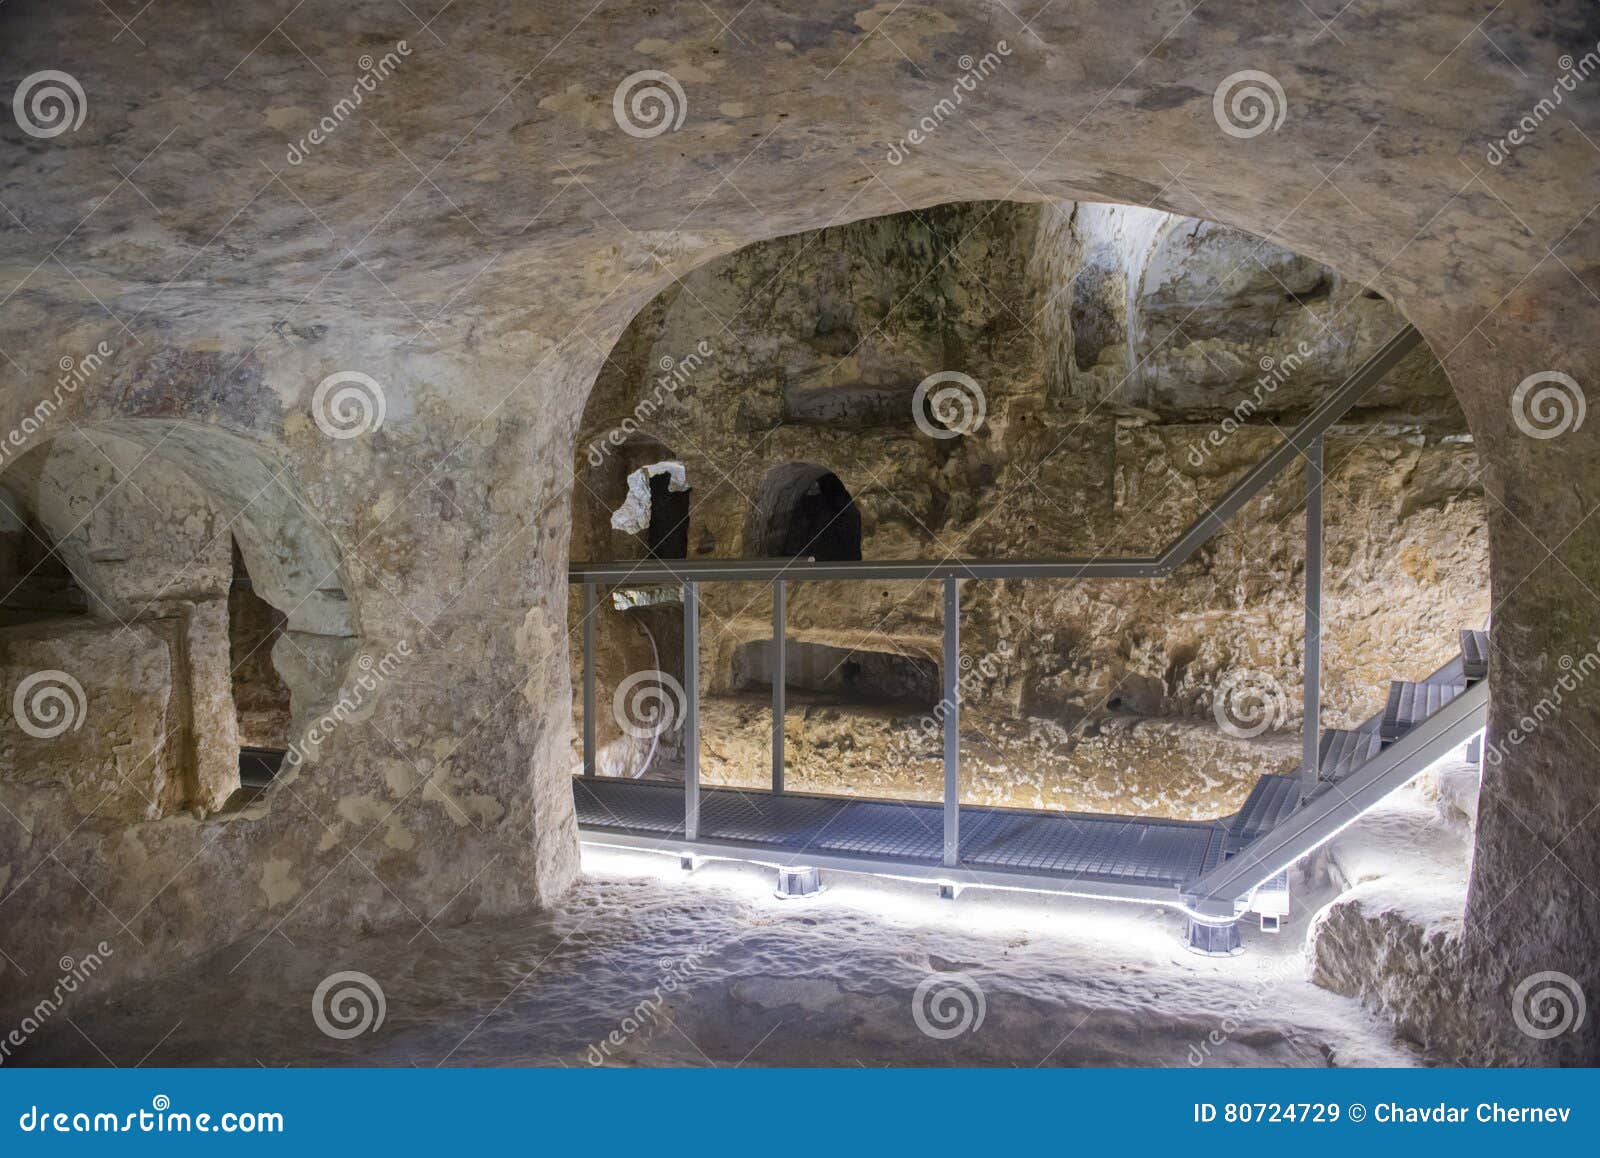 st. paulÃ¢â¬â¢s catacombs, rabat, malta